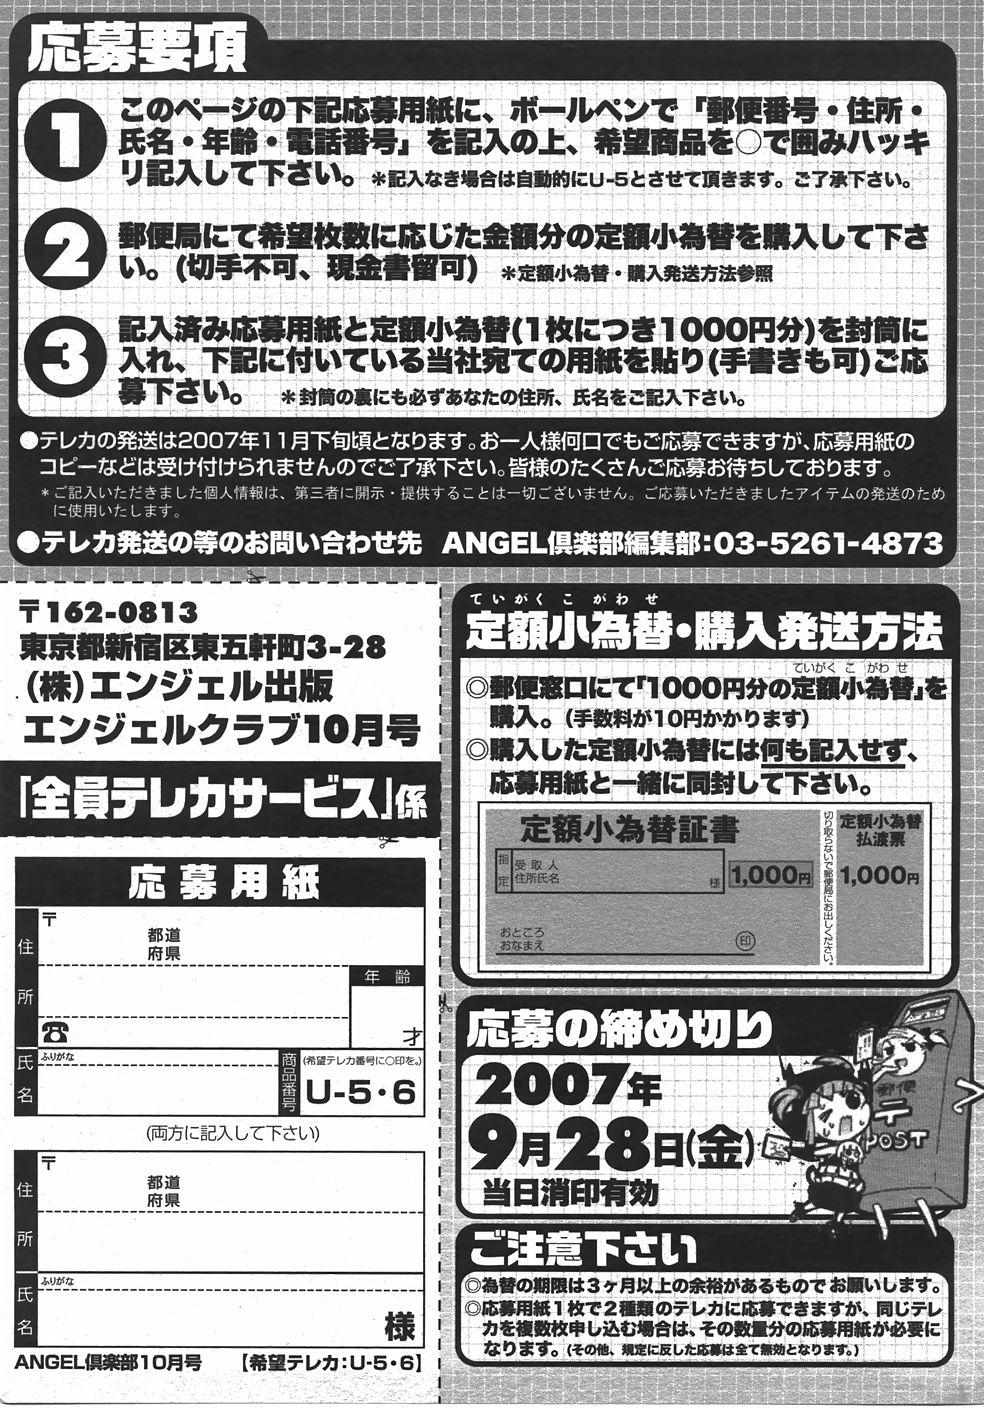 ANGEL Club 2007-10 199